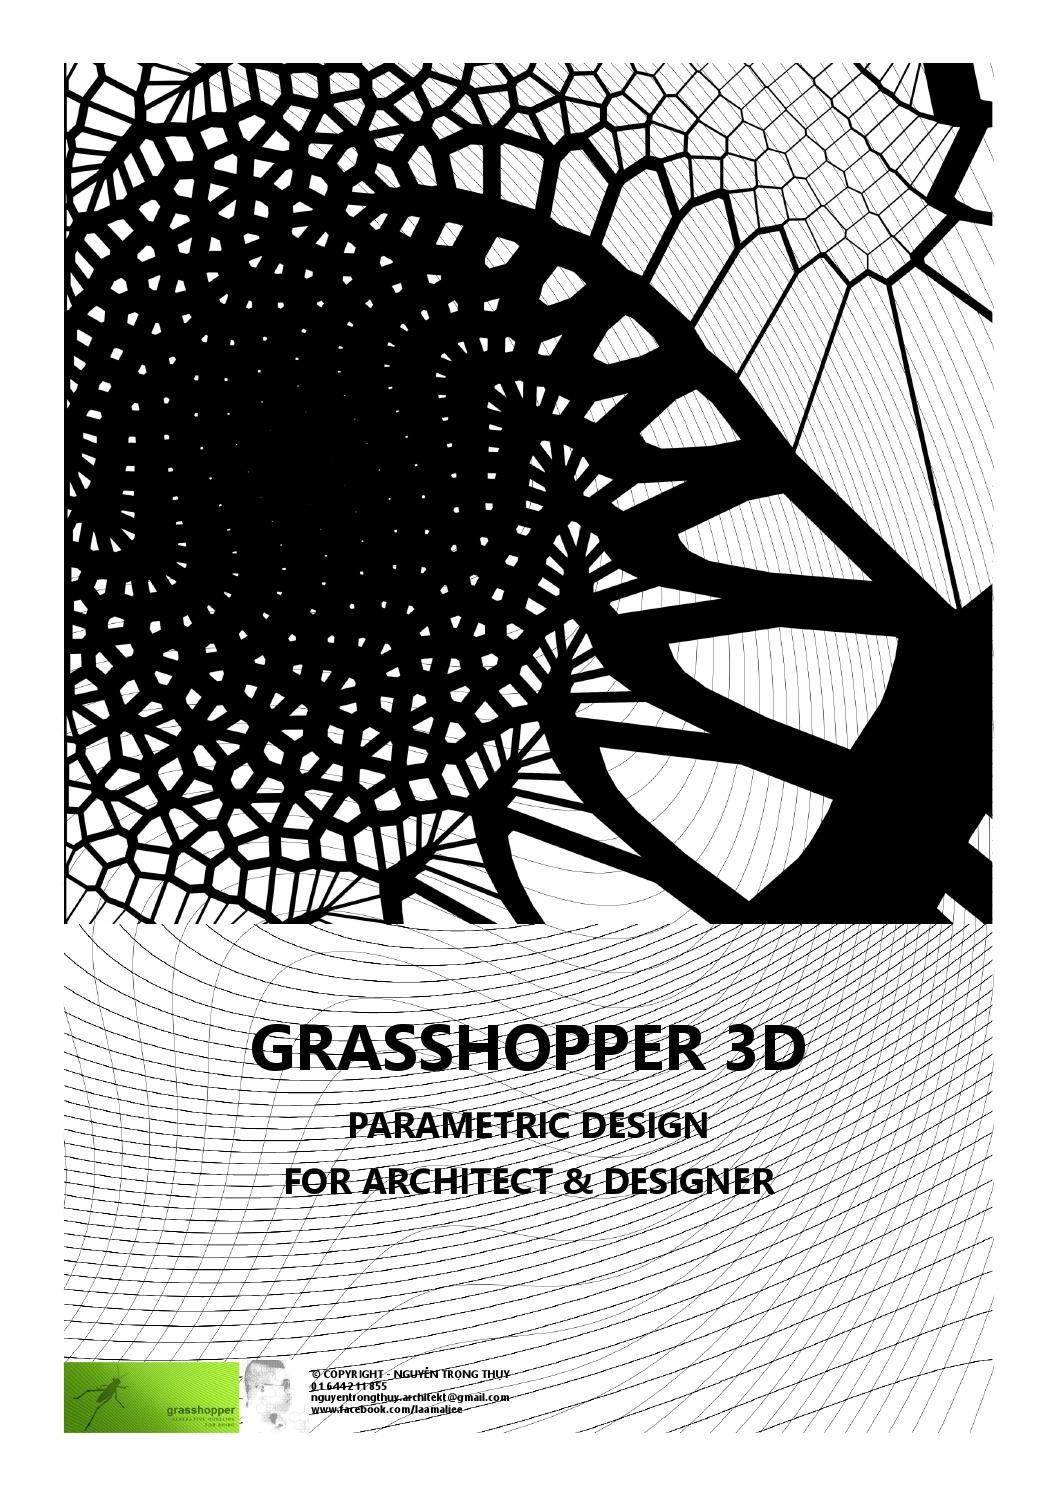 ebook for grasshopper parametric design